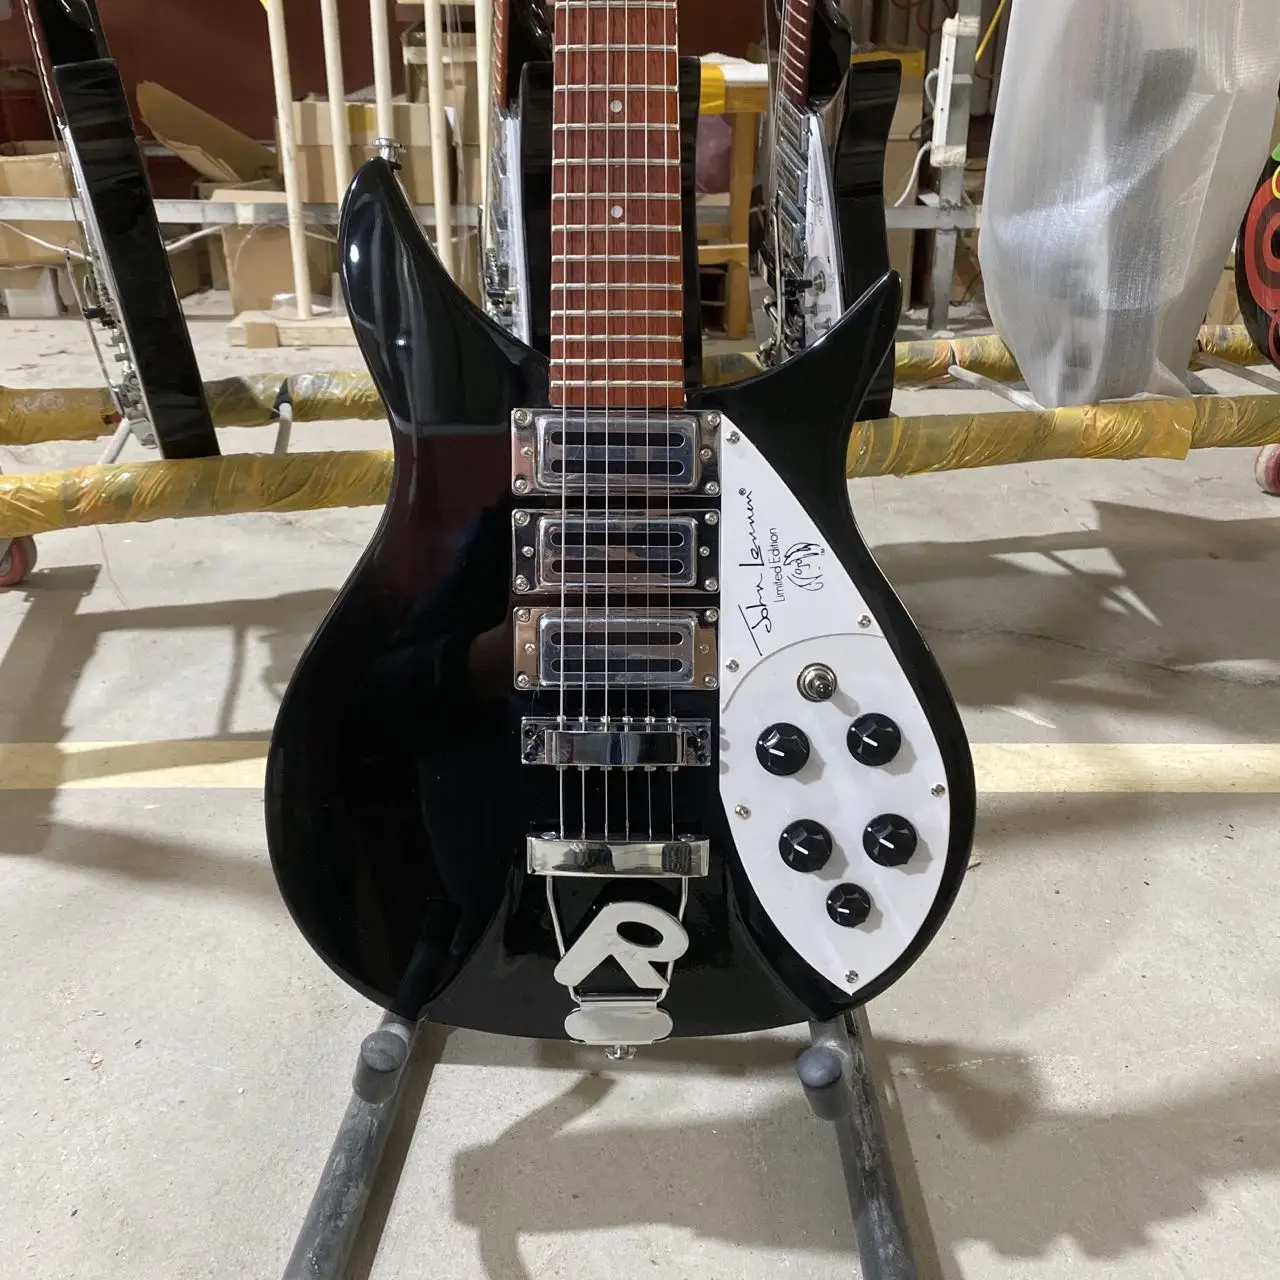 

Электрическая гитара Rickenbacker 325, мост системы тремолос, черный цвет, фингерборд из розового дерева, 6-струнная гитара, гитара, Bluetooth